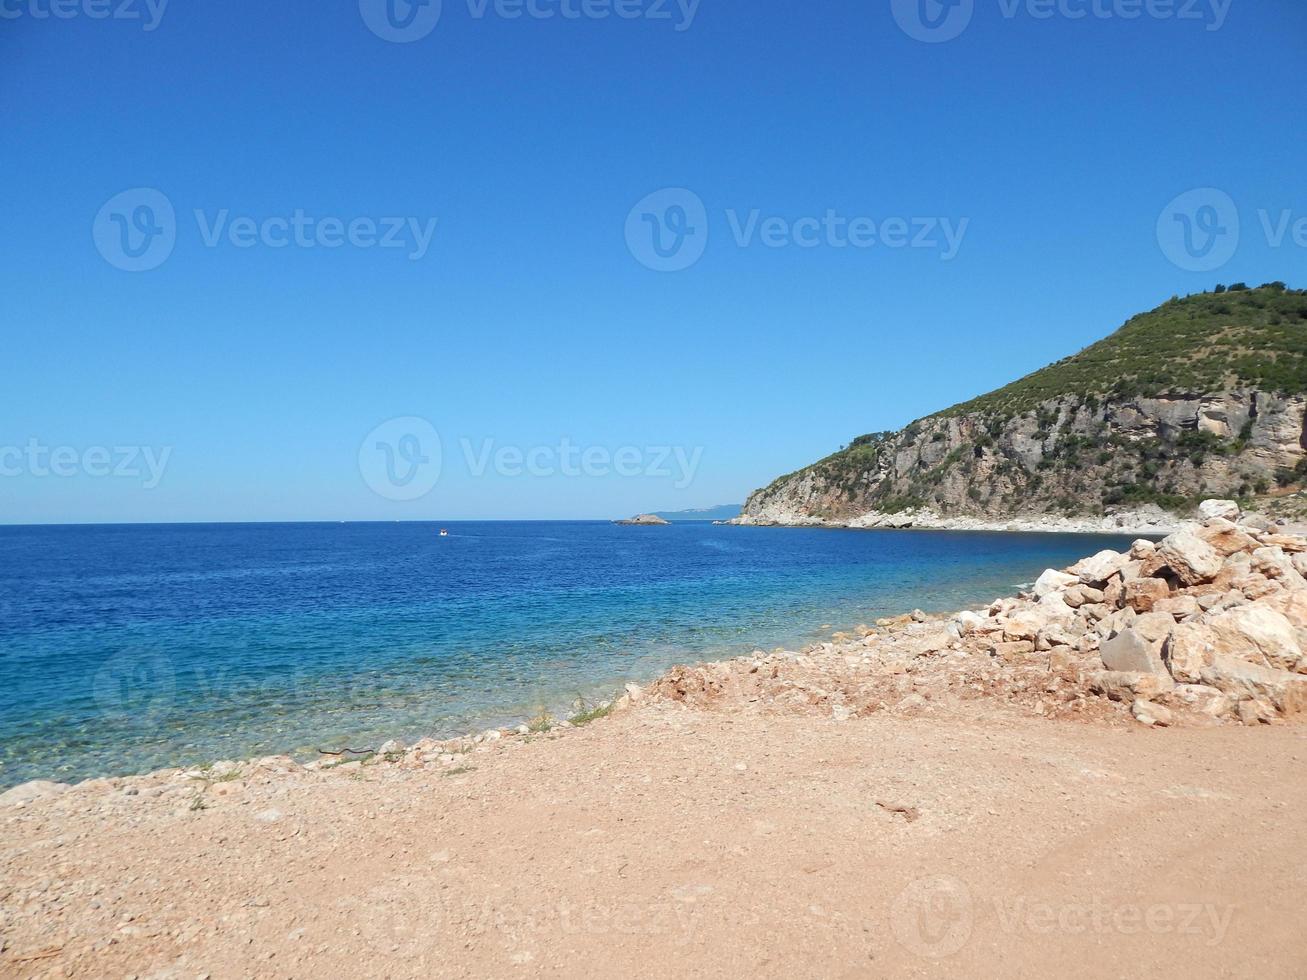 viaggio in montenegro, mare adriatico, paesaggi foto